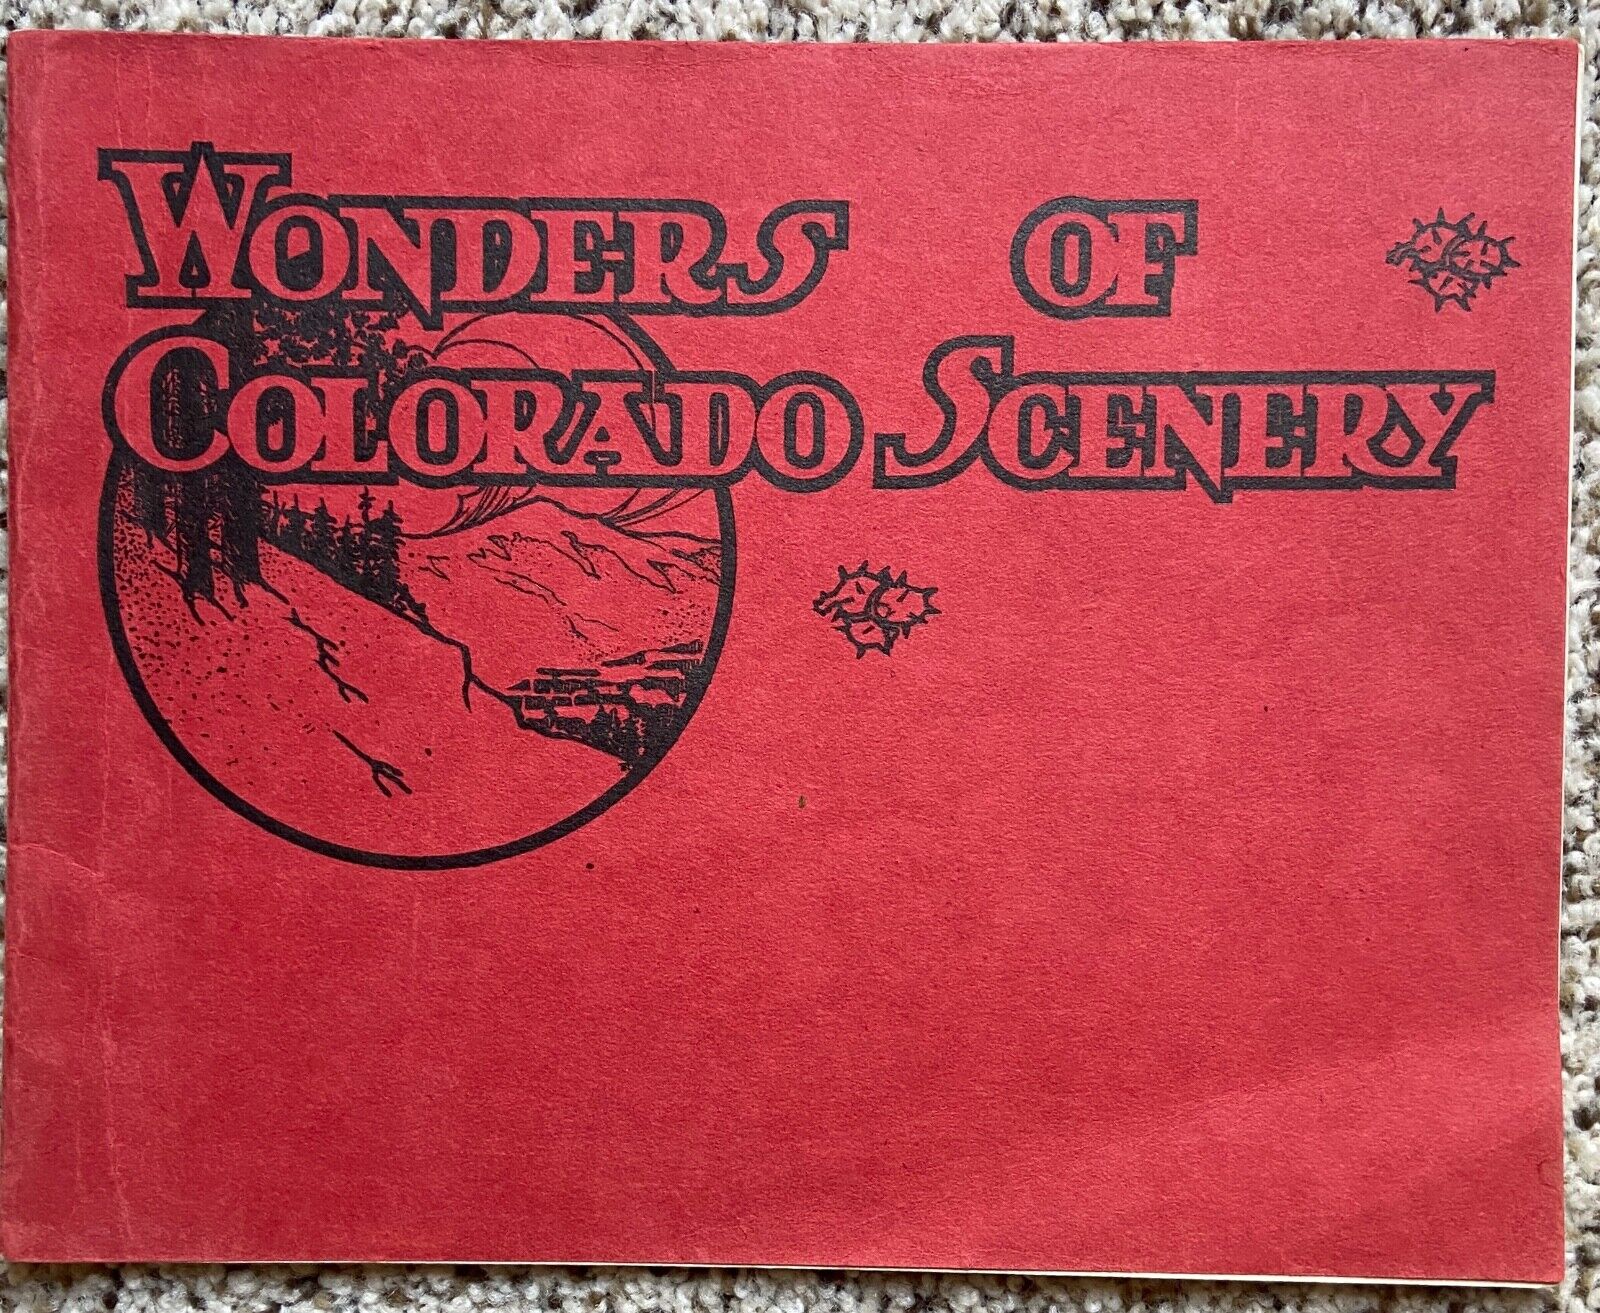 1895 WONDERS OF COLORADO SCENERY